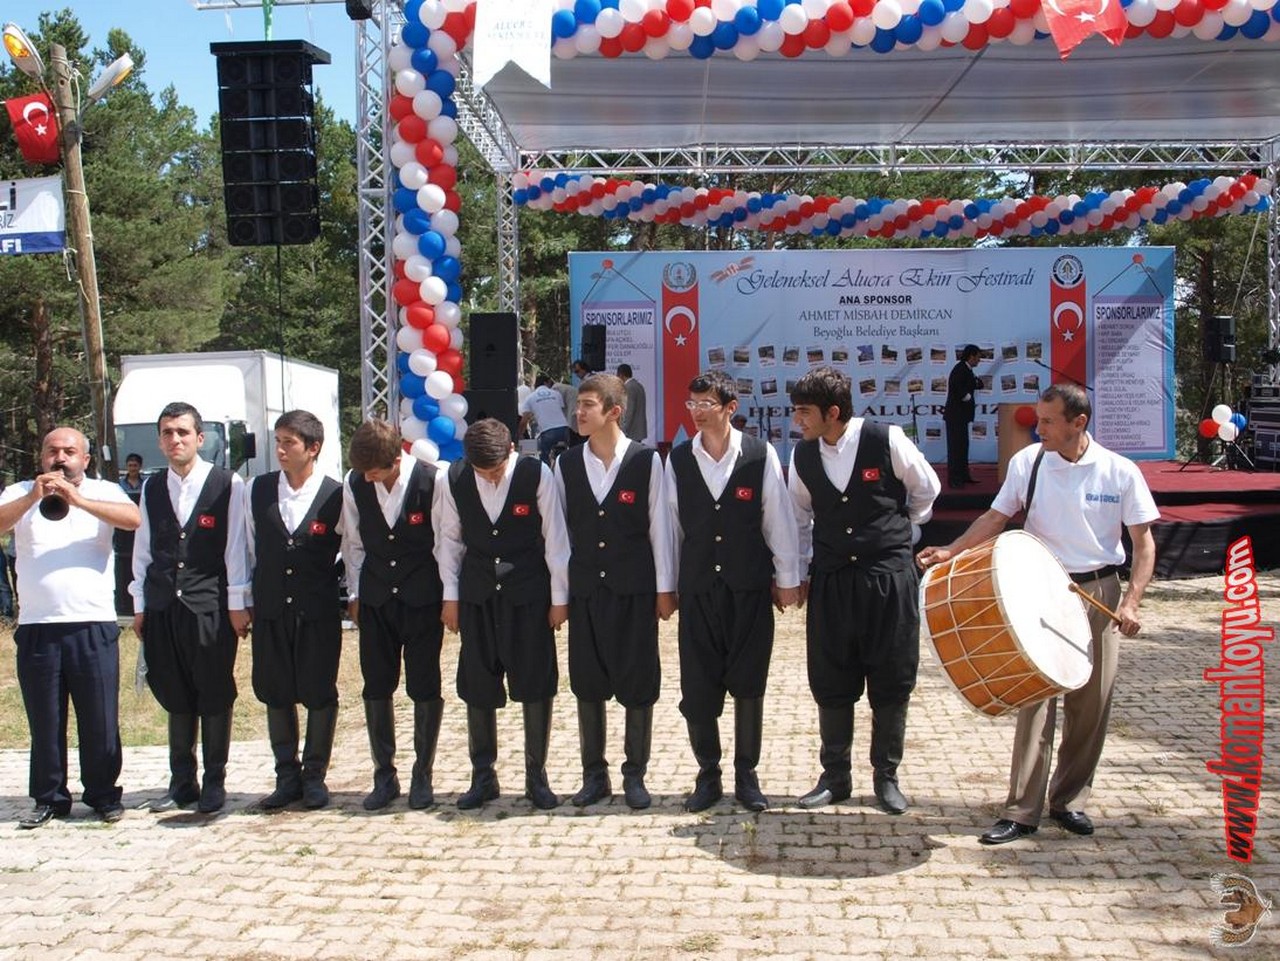 Yerel Tatlar Festivali 2011